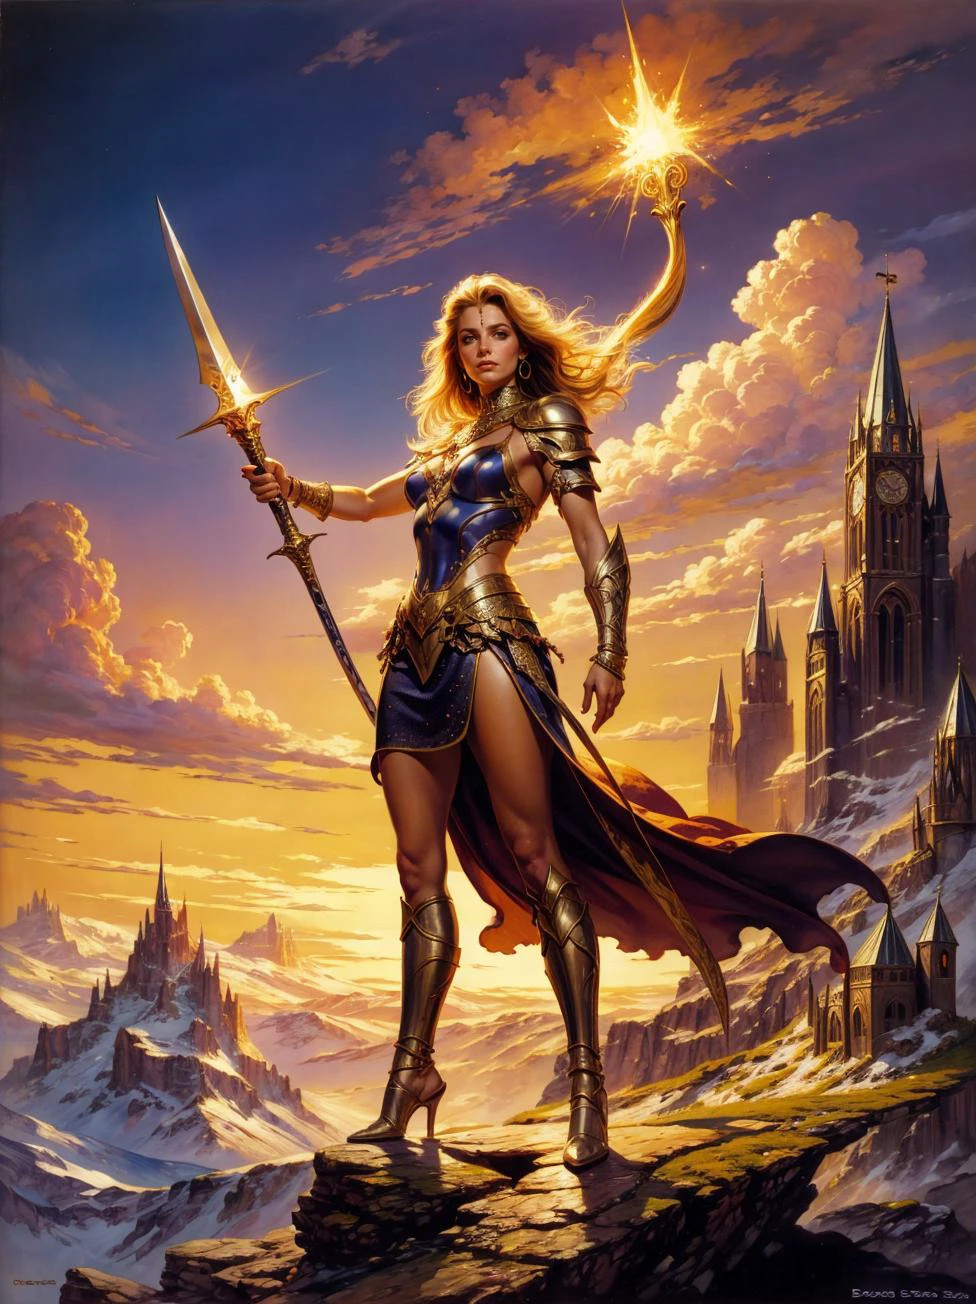 鮑里斯·瓦列霍 (Boris Vallejo) 的奇幻畫作, 一個穿著鏈甲的美麗女戰士的肖像, 挥舞着发光的剑, 凱旋地站在山峰上. 阿斯特拉_B肝病毒